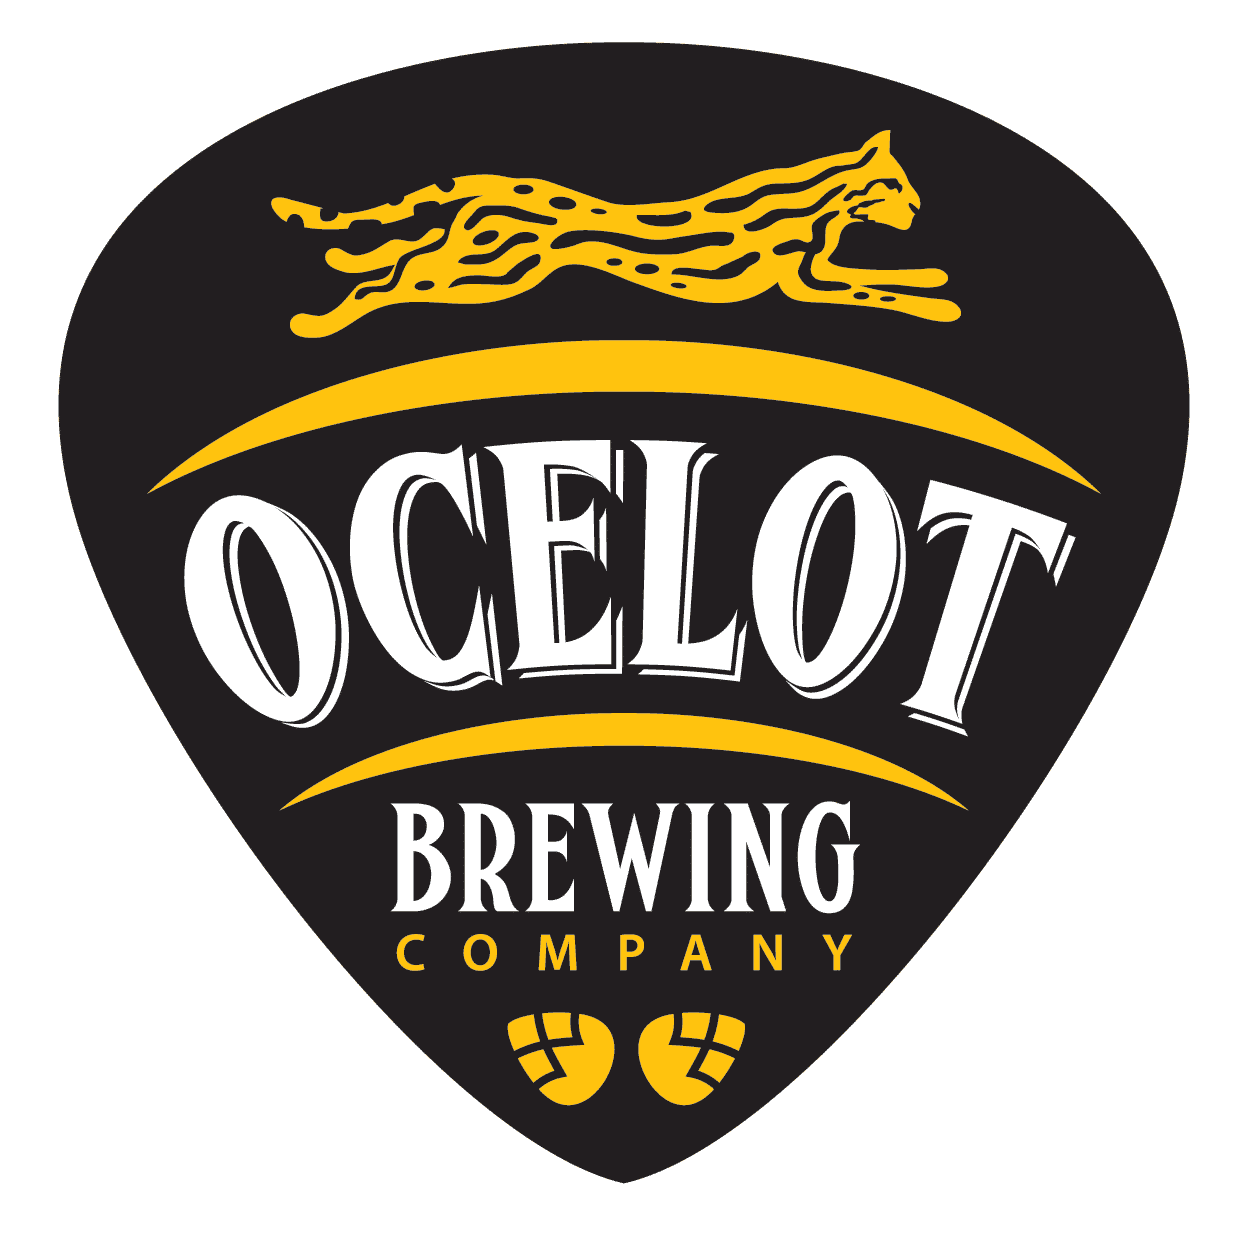 Ocelot Brewing Co